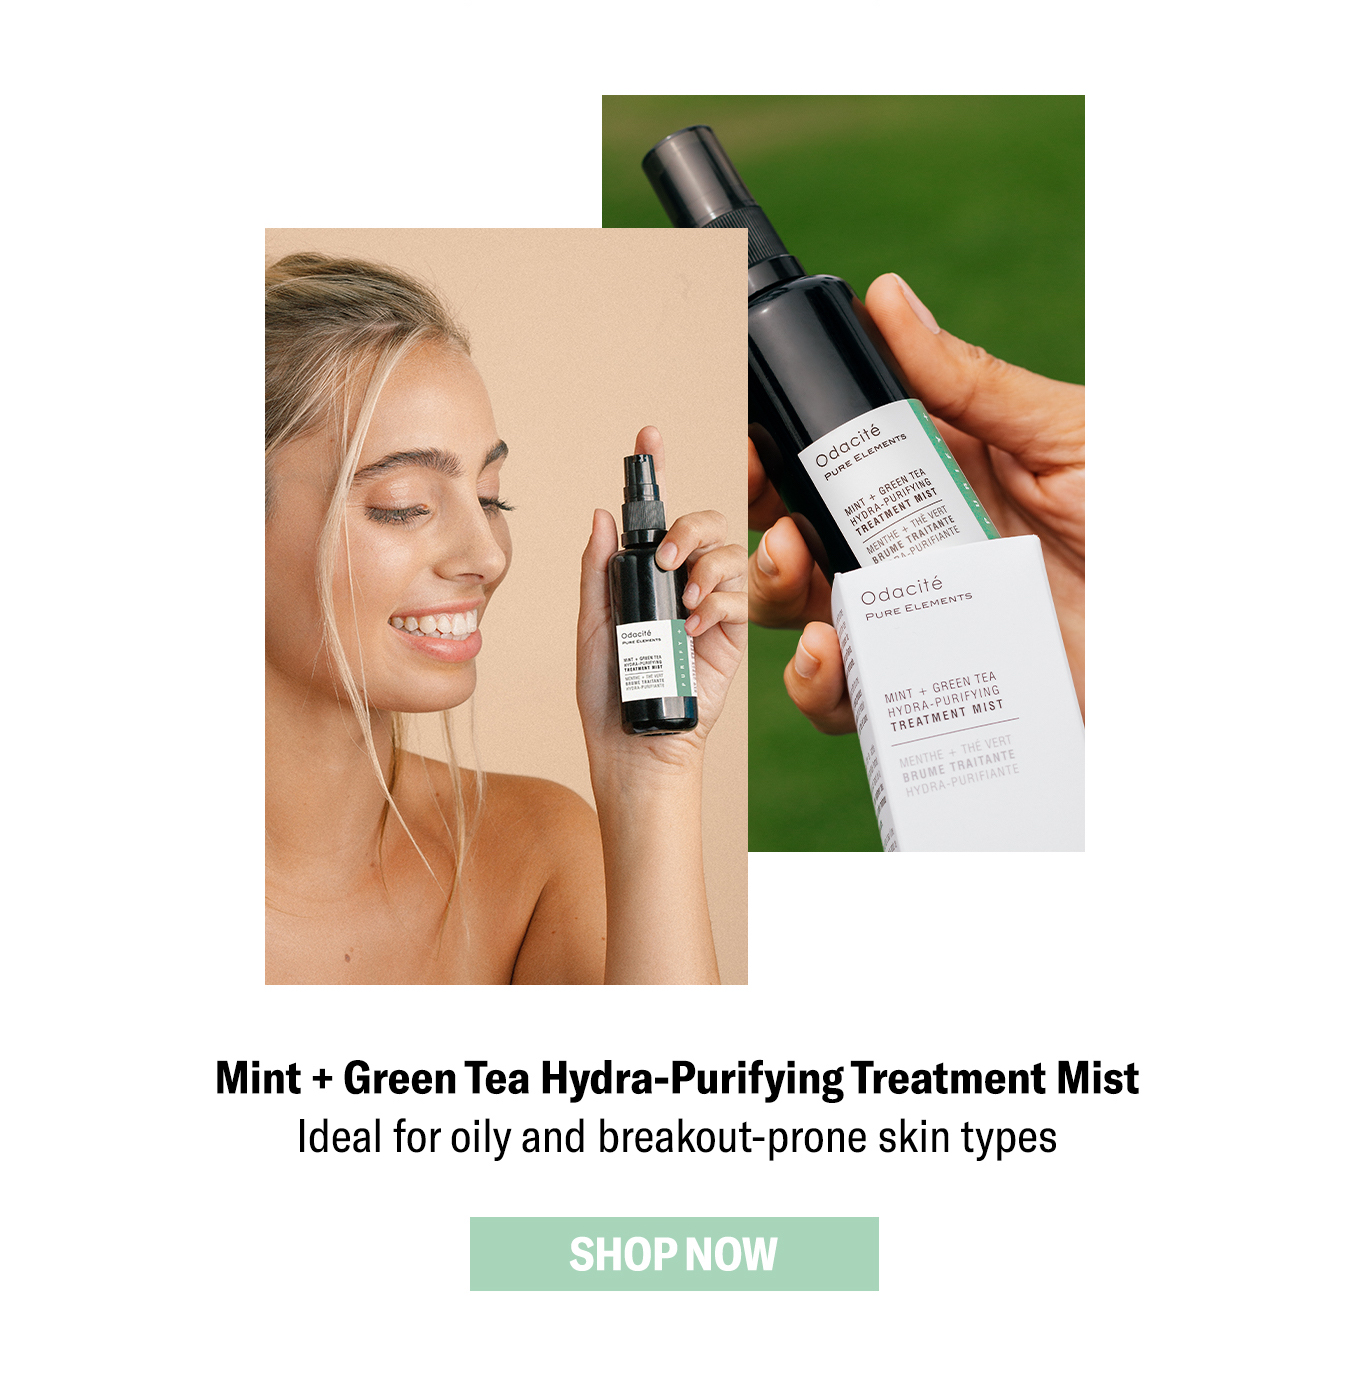 Mint + Green Tea Hydra-Purifying Treatment Mist